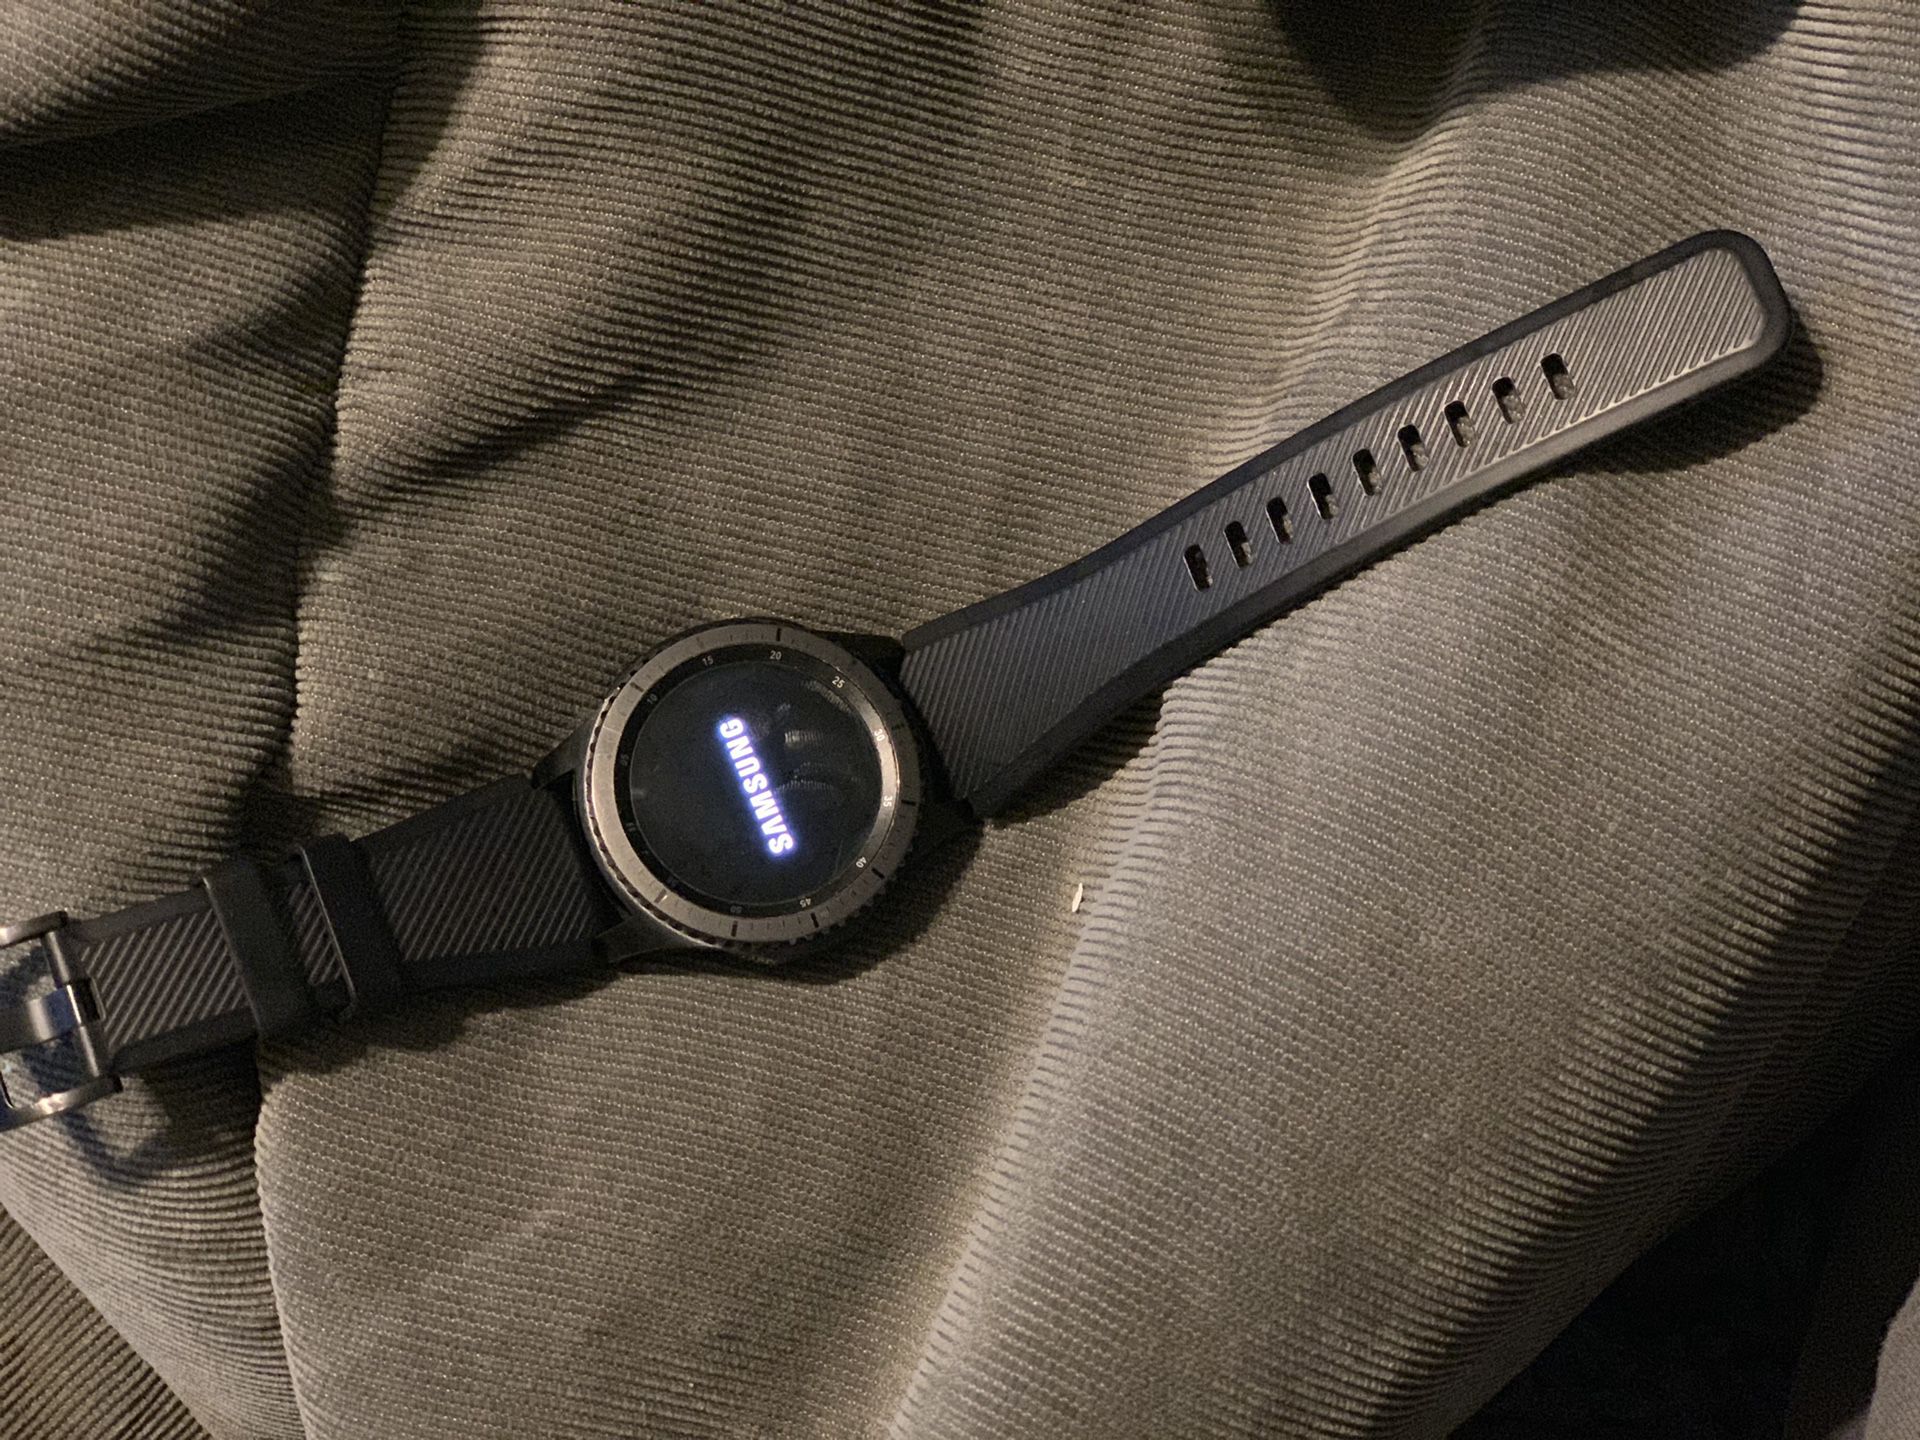 Samsung Gear S3 Frontier Watch